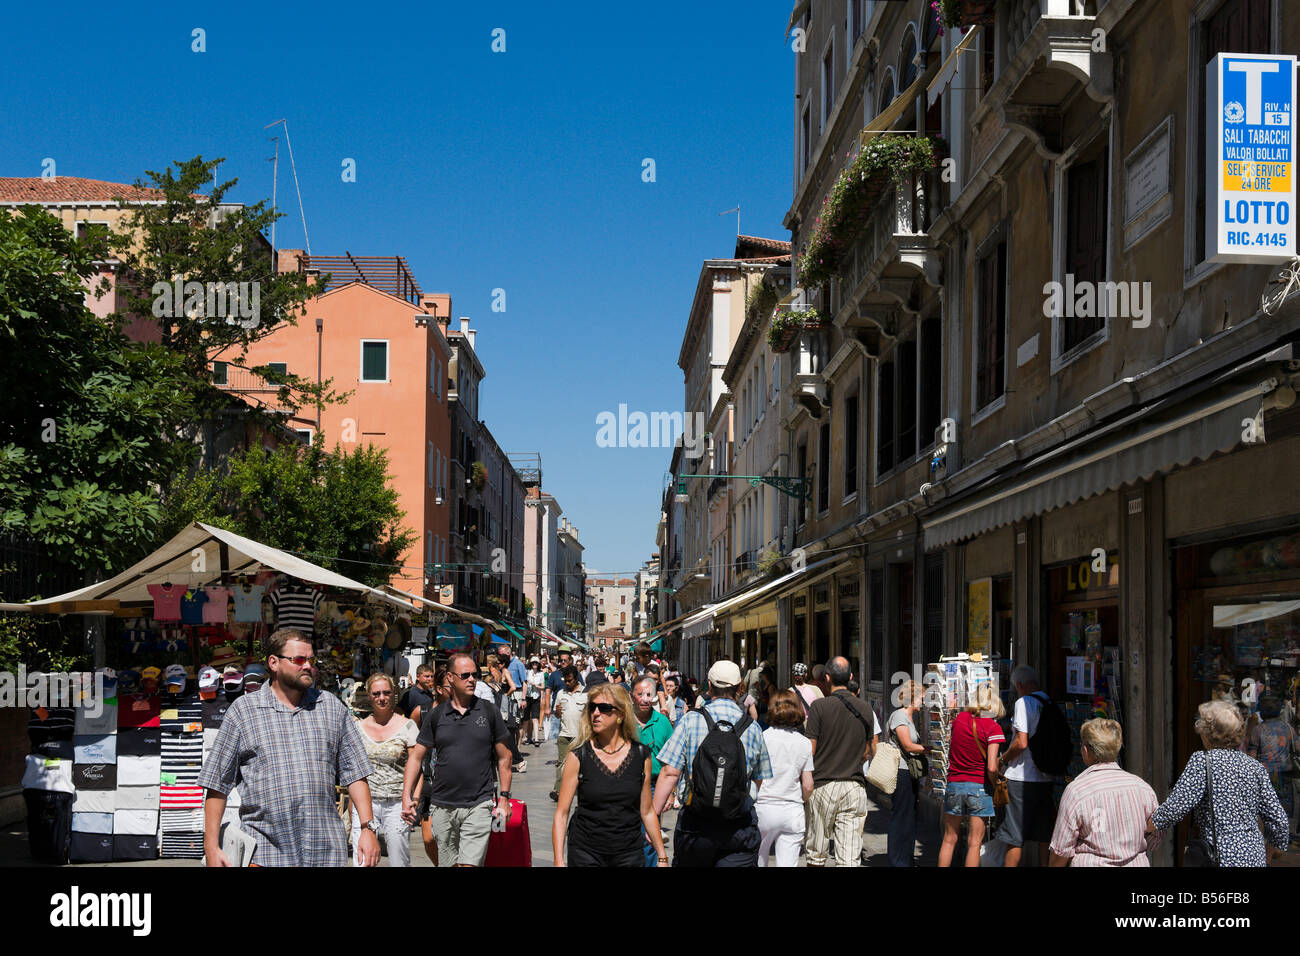 Affollata strada commerciale che conduce alla stazione ferroviaria, Strada Nova, Venezia, Veneto, Italia Foto Stock